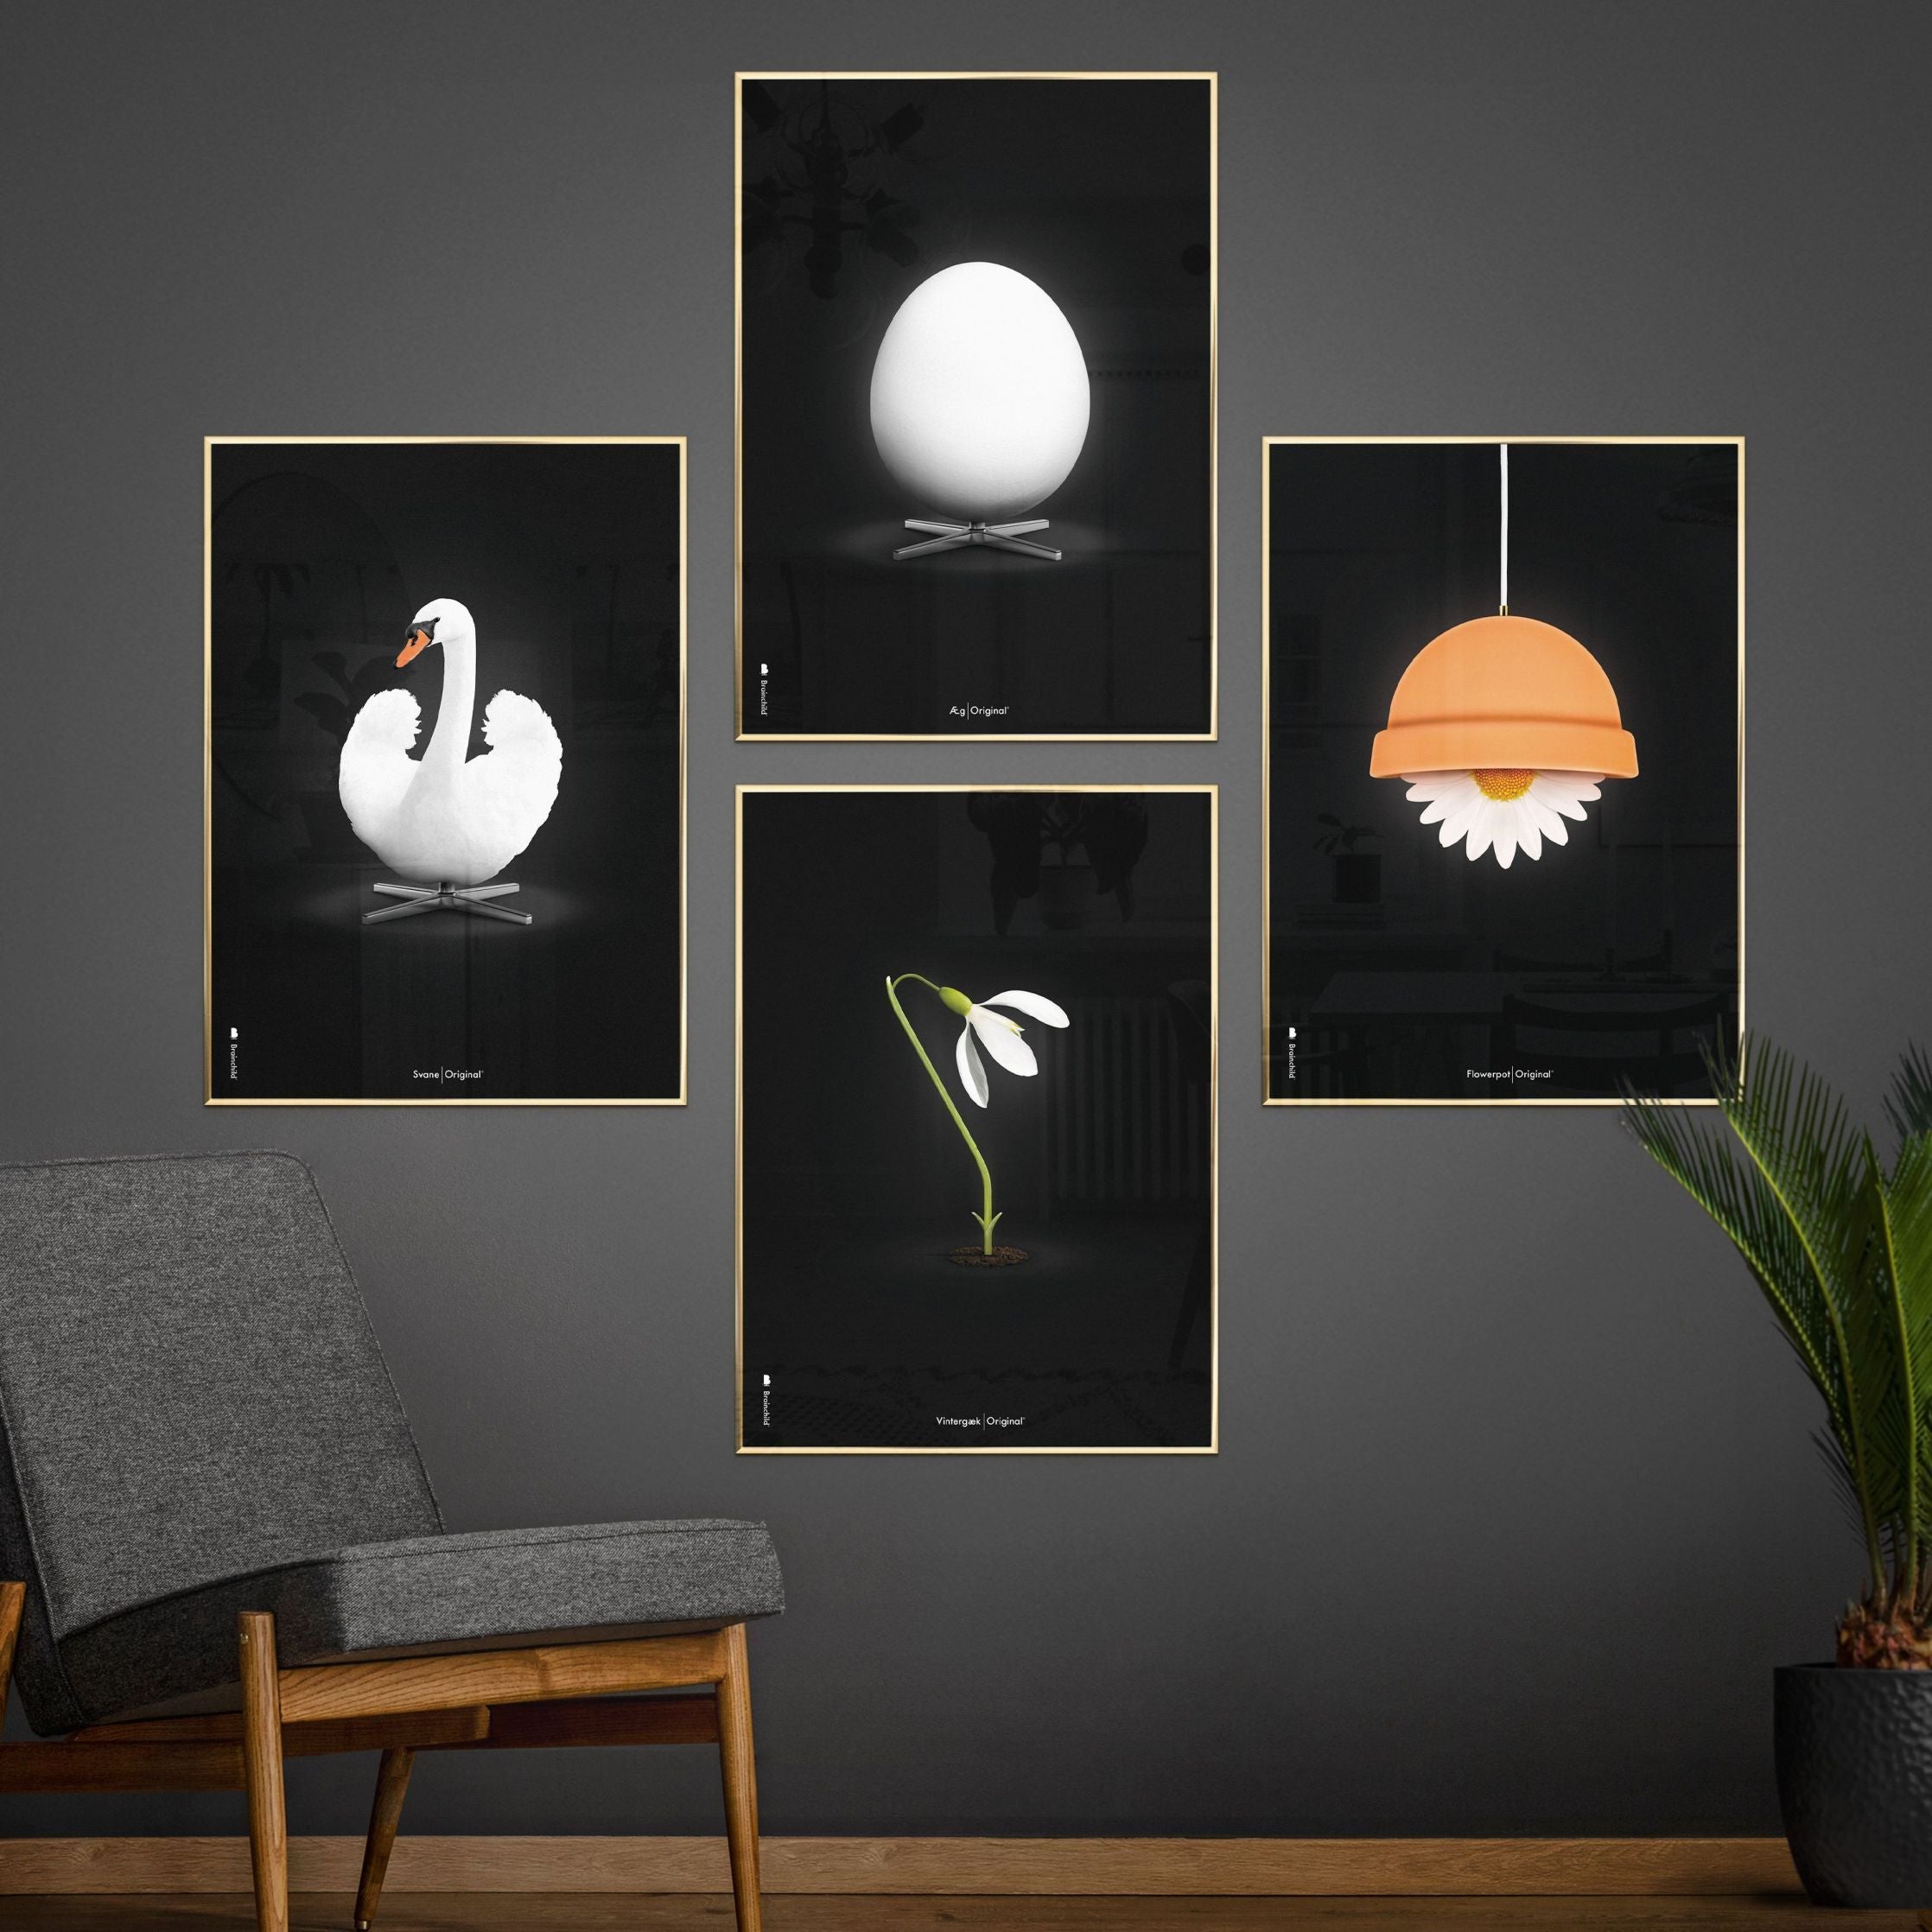 Klasický plakát Brainchild Flowerpot, rám vyrobený z lehkého dřeva 30x40 cm, černé pozadí